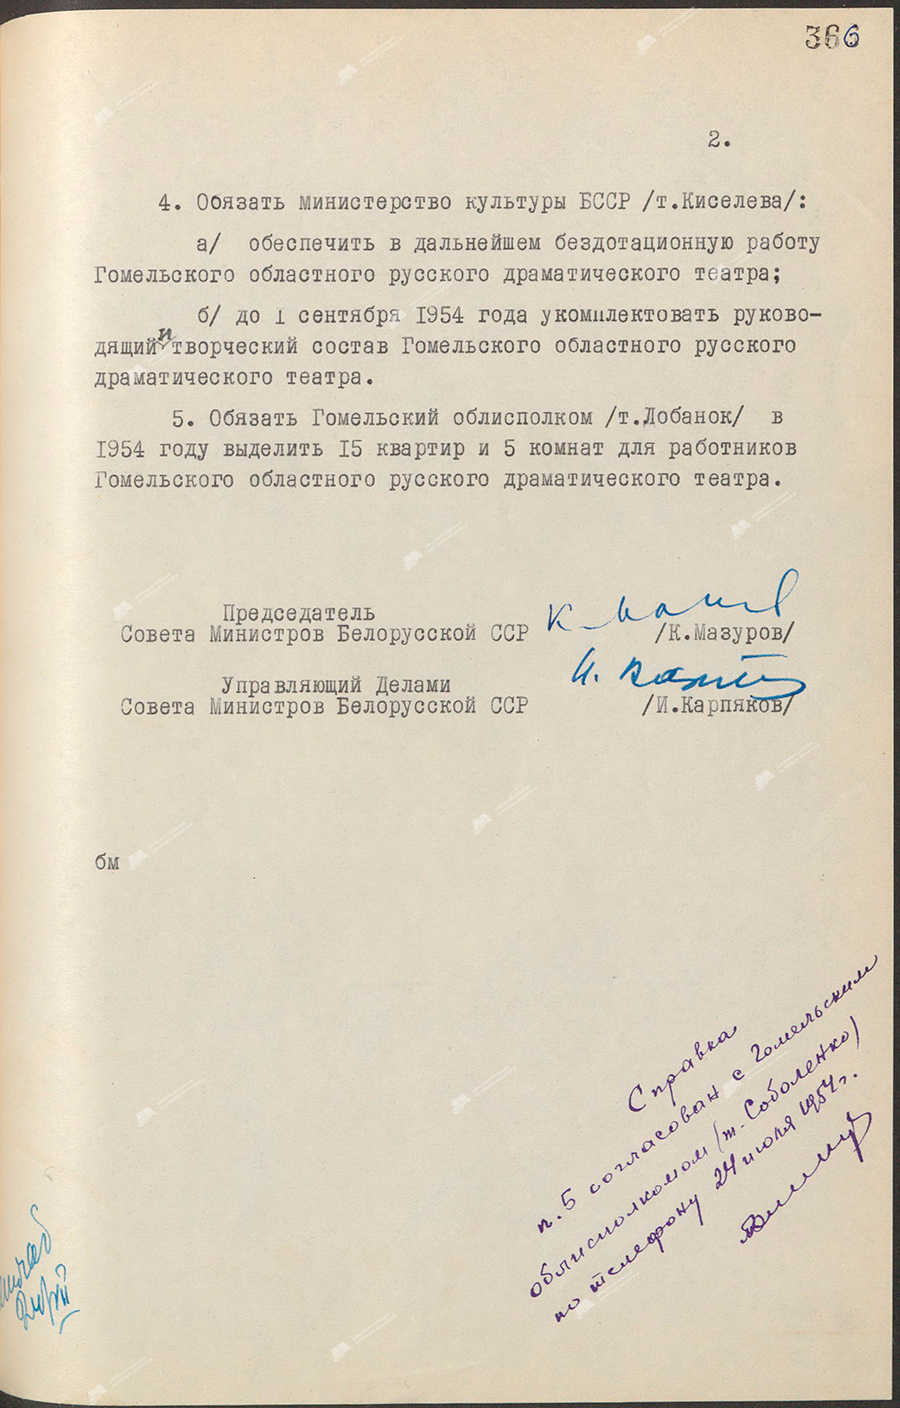 Beschluss Nr. 697 des Ministerrats der Weißrussischen SSR «Über die Organisation des regionalen russischen Dramatheaters Gomel»-с. 1